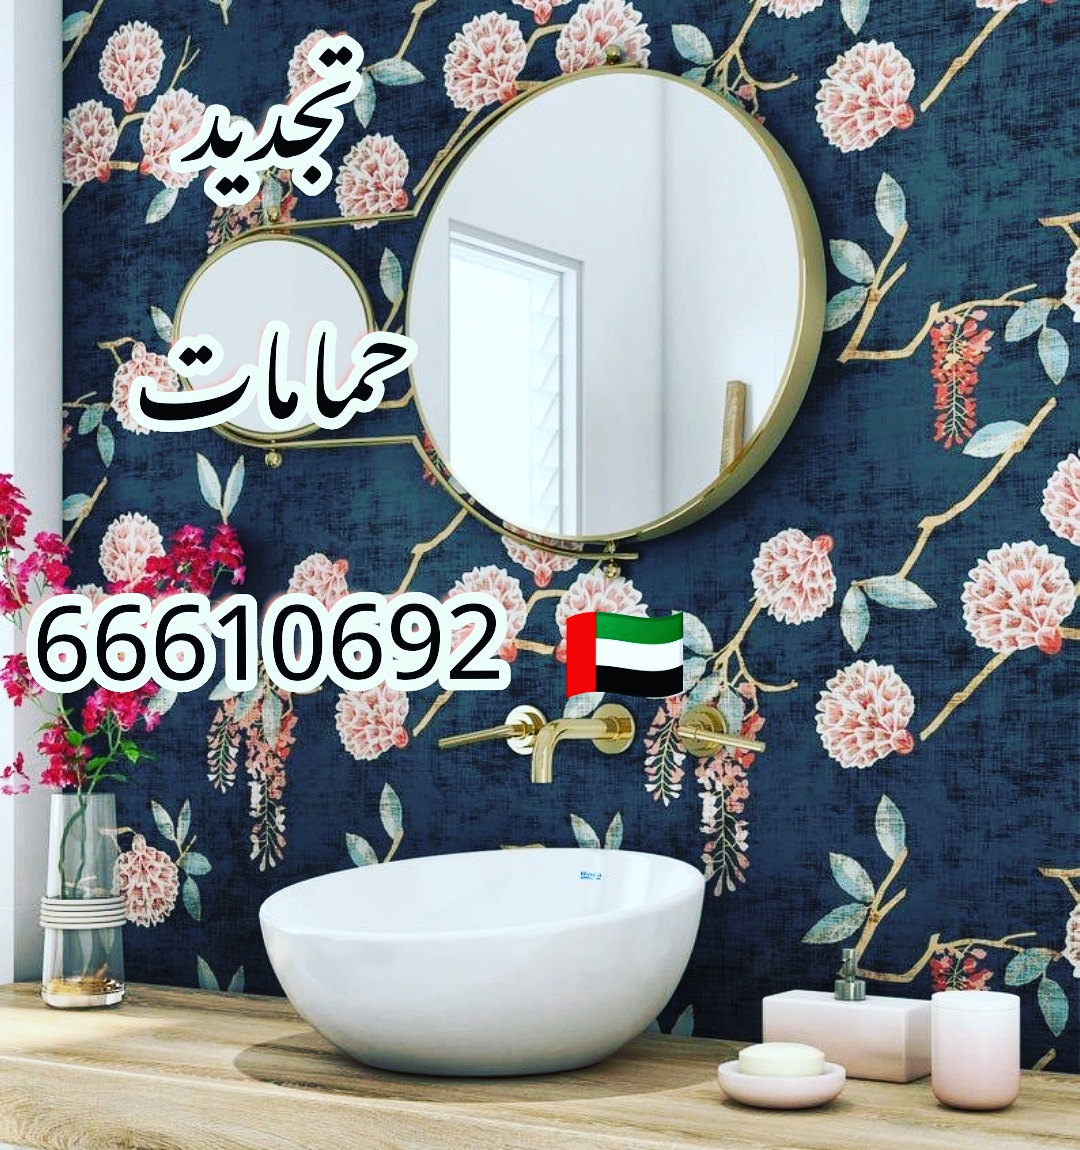 ادوات صحية المسايل / 66610692 / صيانة وتركيب فني صحي الكويت